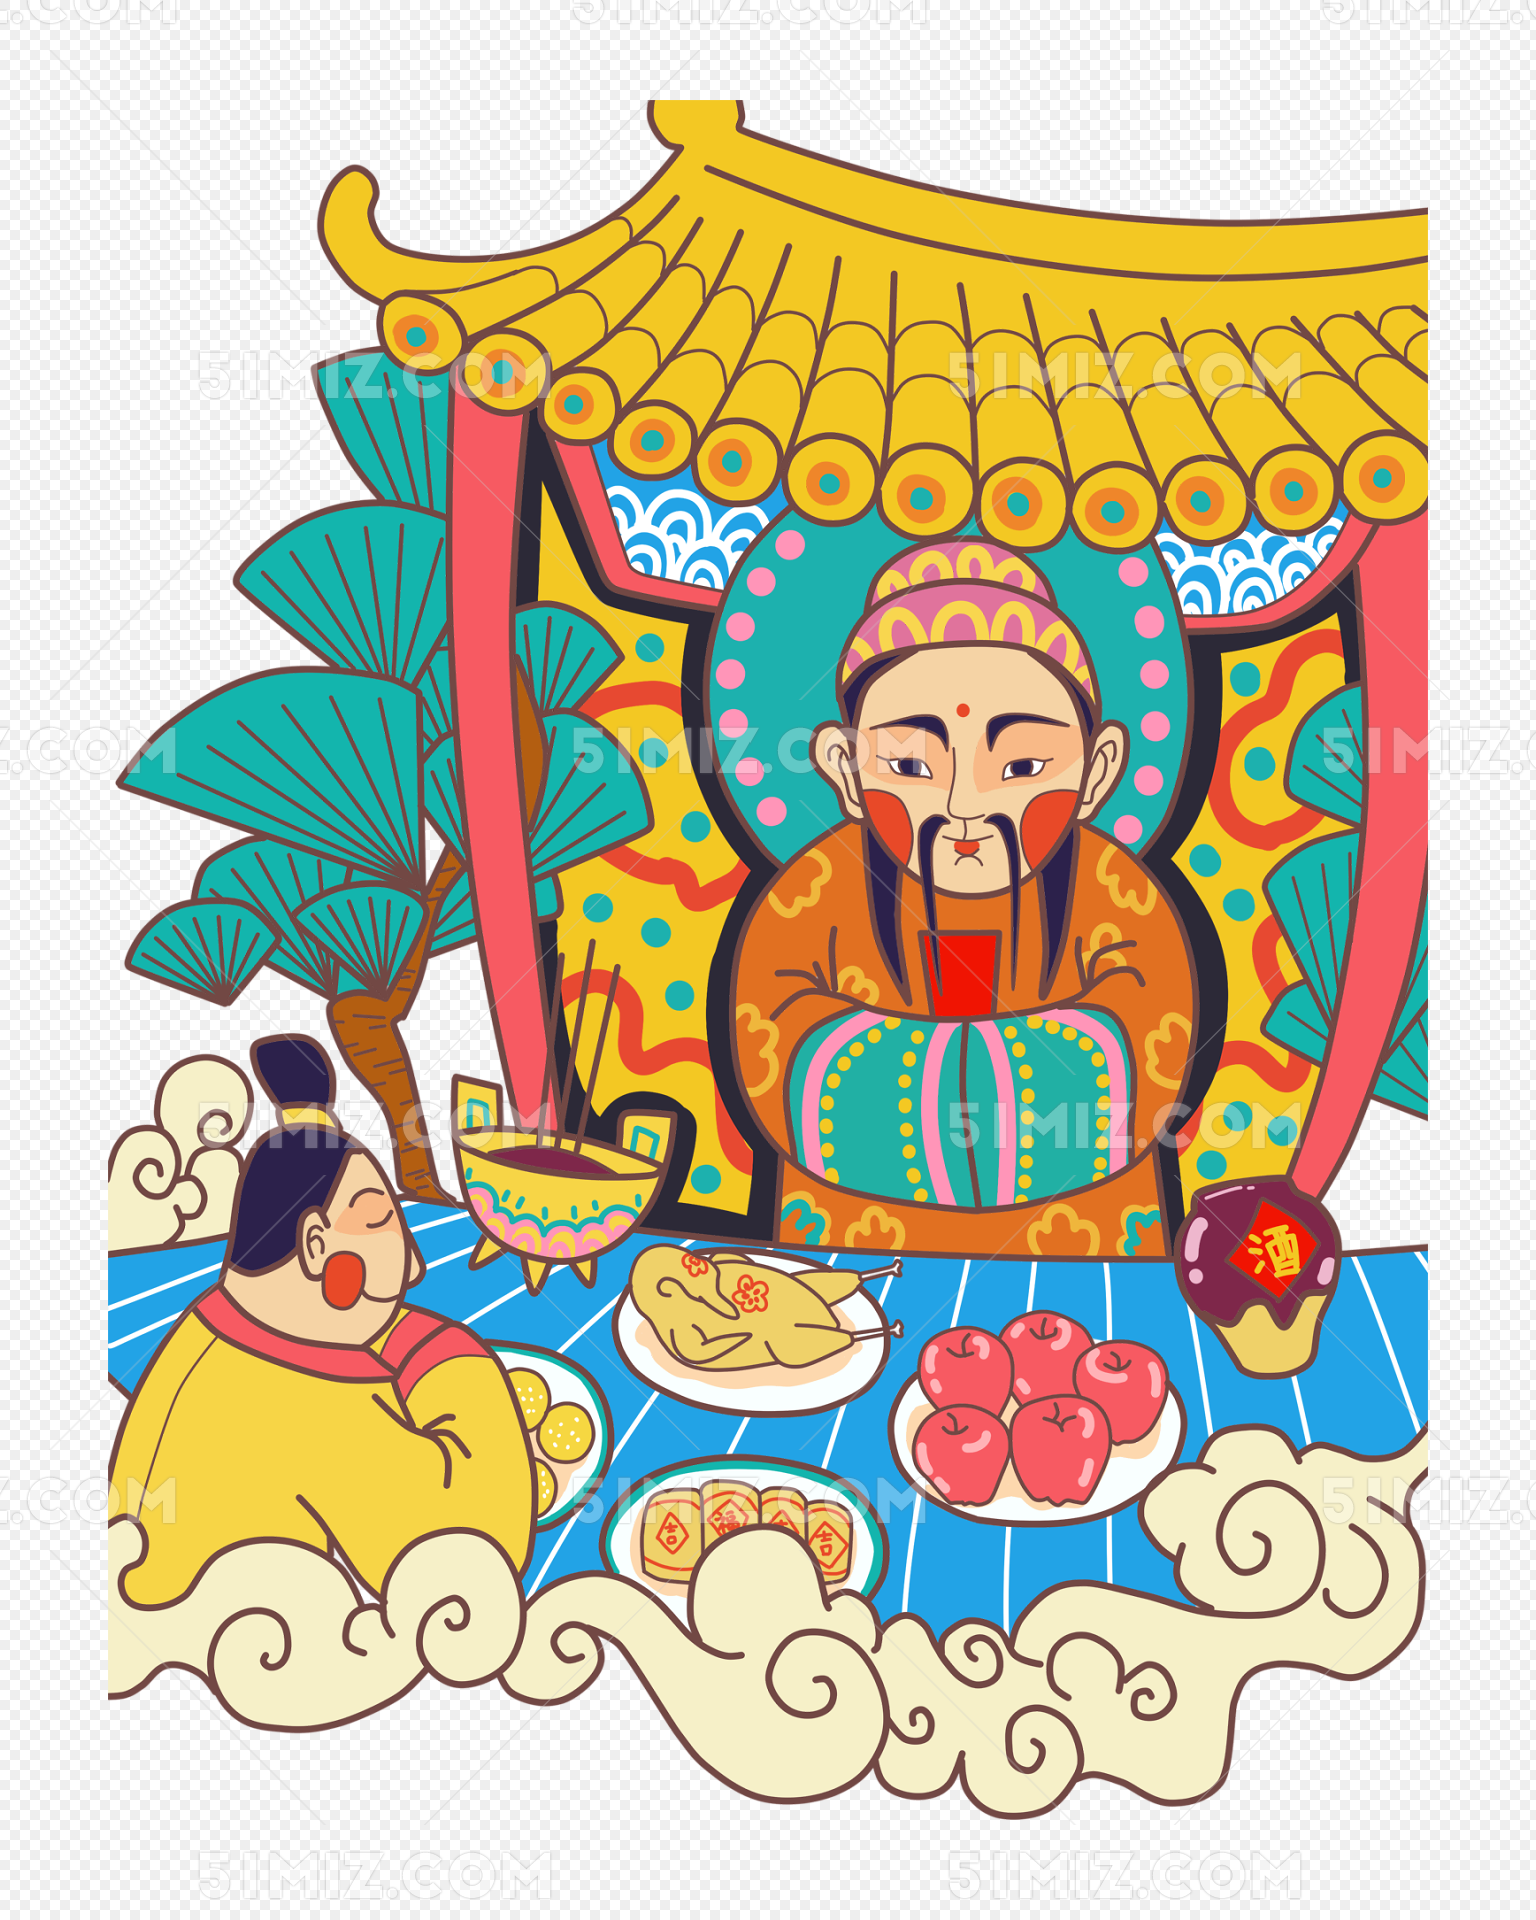 原创插图展 | 插画师笔下的祭火仪式-草原元素---蒙古元素 Mongolia Elements